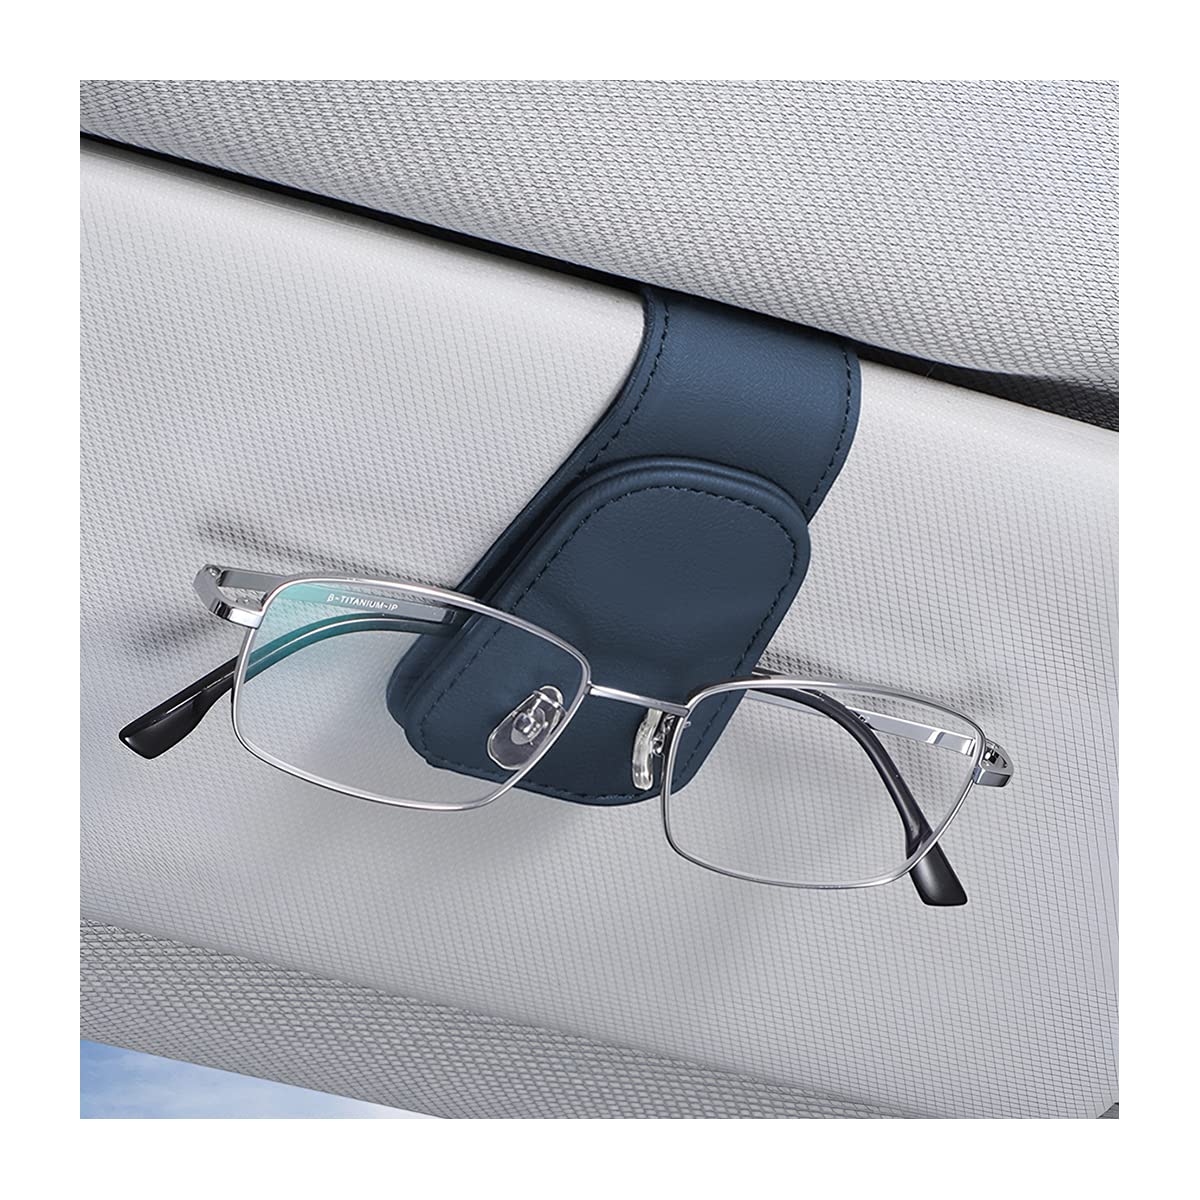 CGEAMDY Brillenhalter für Auto Sonnenblende, Auto Visier Brille Halterung, Magnetischer Leder Brillenhalter Clip, Ticket Karten Clip Brillen Halterung Geschenke (Blau) von CGEAMDY